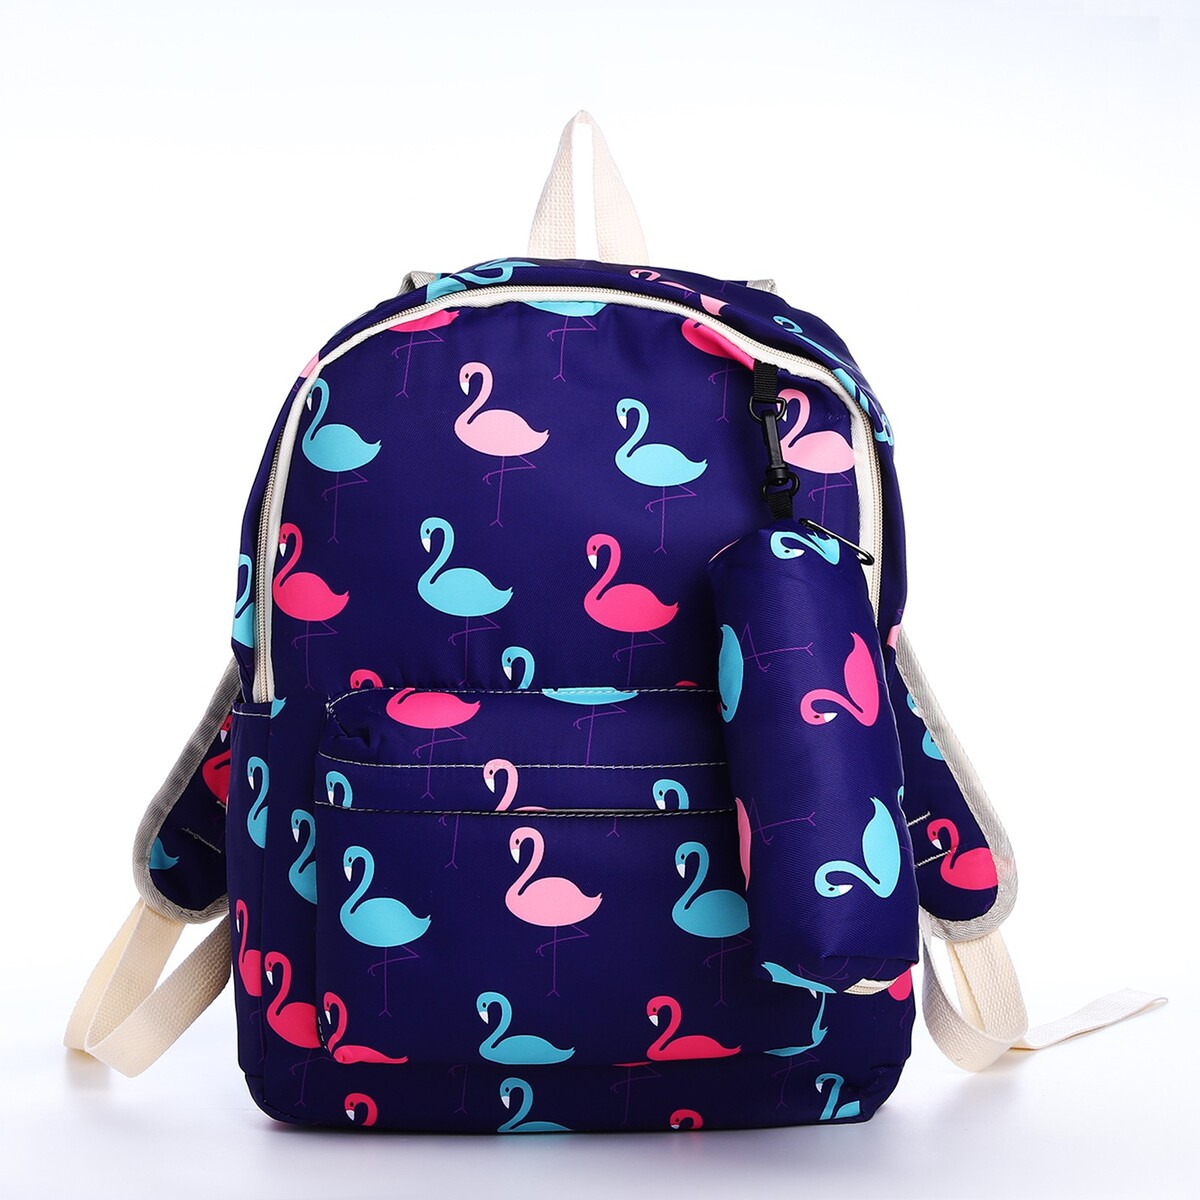 Рюкзак школьный из текстиля на молнии, 3 кармана, пенал, цвет фиолетовый рюкзак школьный grizzly 13 анатомический фиолетовый rg 464 3 1